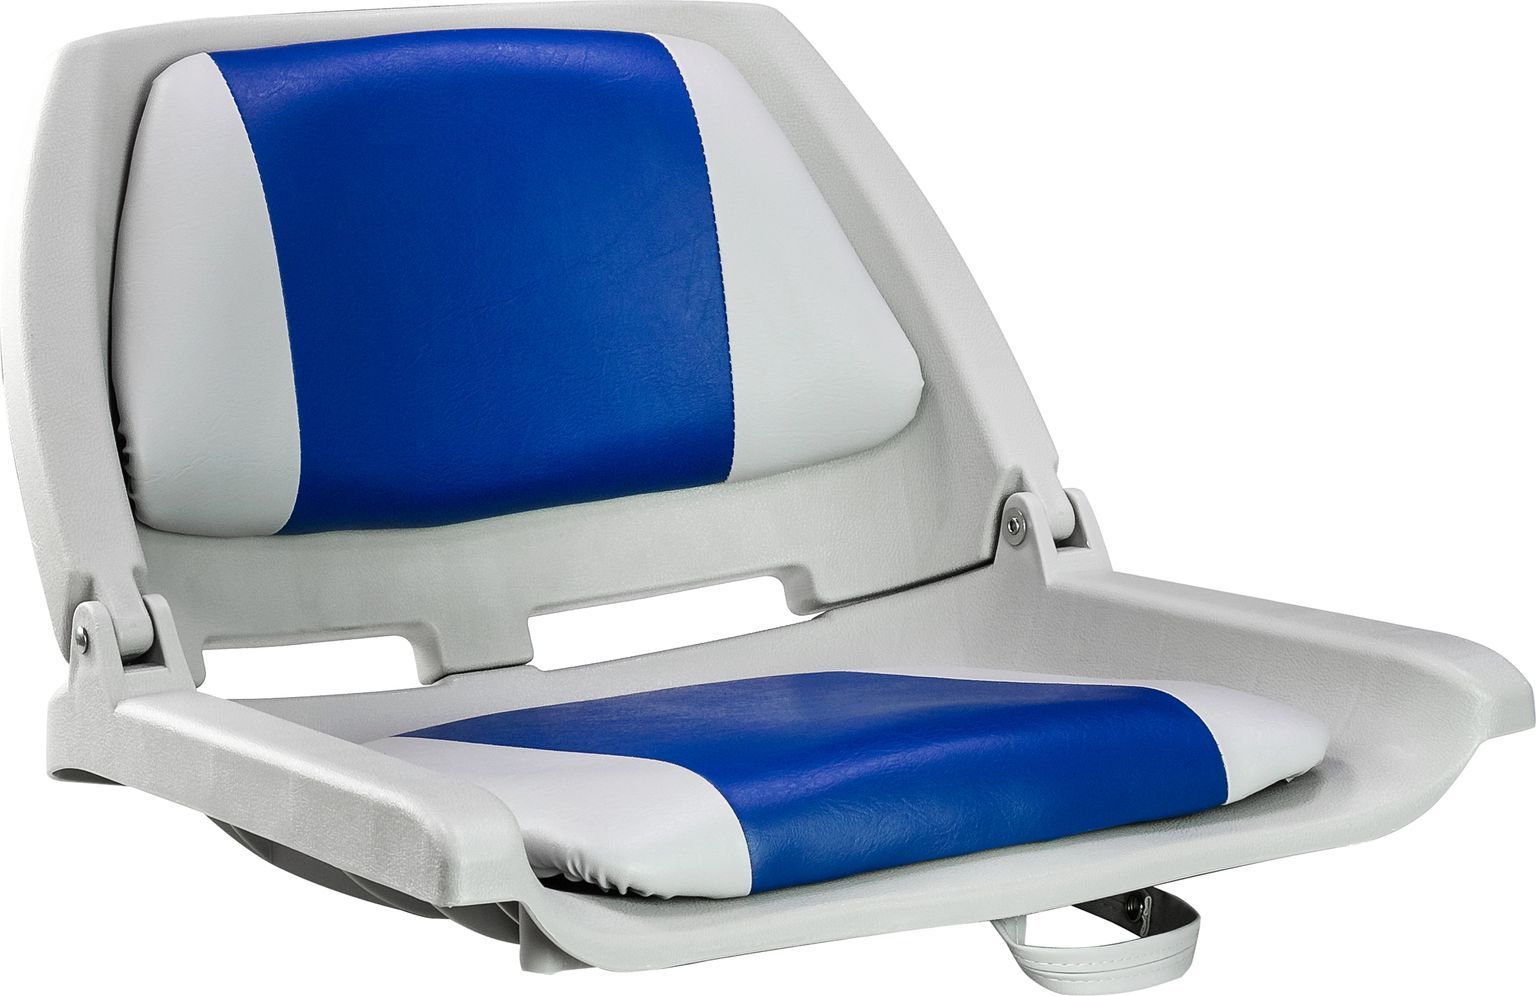 Кресло пластмассовое складное с подложкой Molded Fold-Down Boat Seat,серый/голубой 75109GB кресло складное мягкое classic low back seat серый красный 75102gr